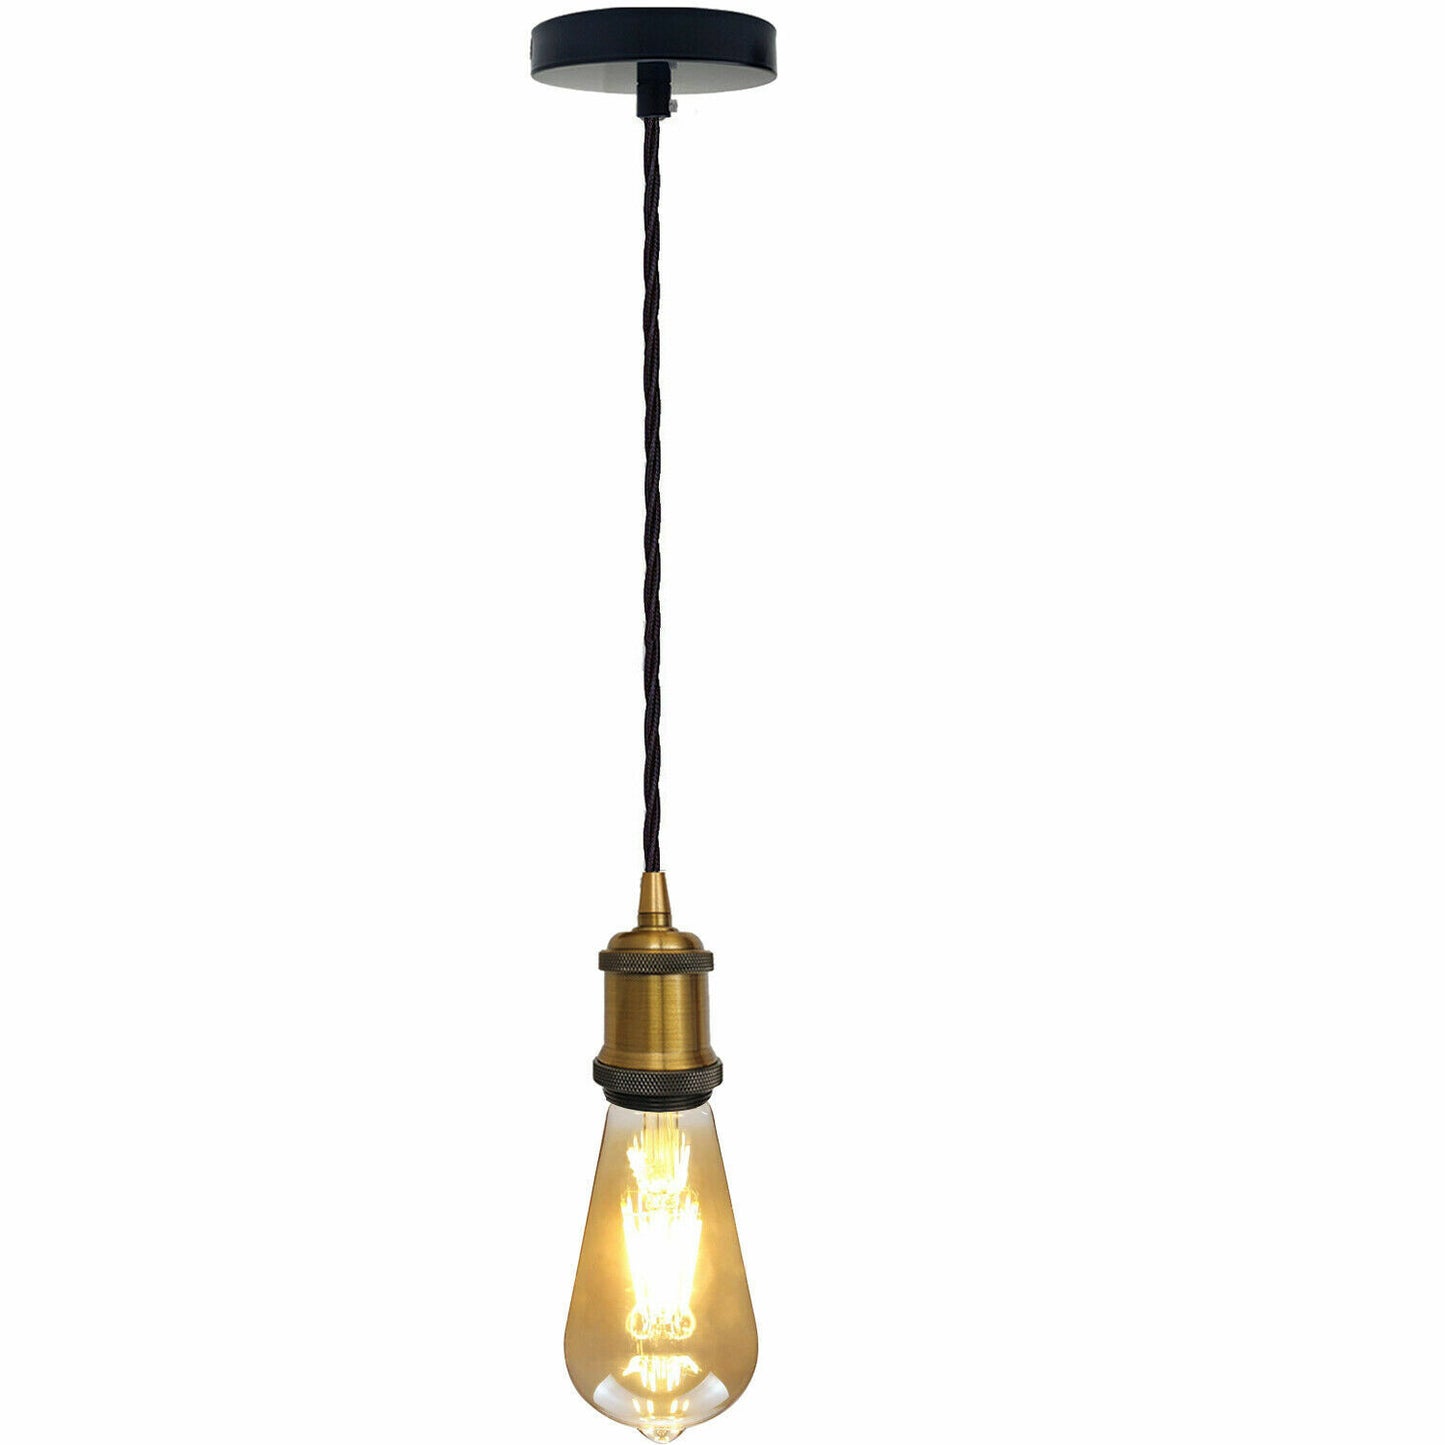 Vintage-Industrie-Hängelampe, E27-Lampenfassung, Deckenrosetten-Beleuchtungsset